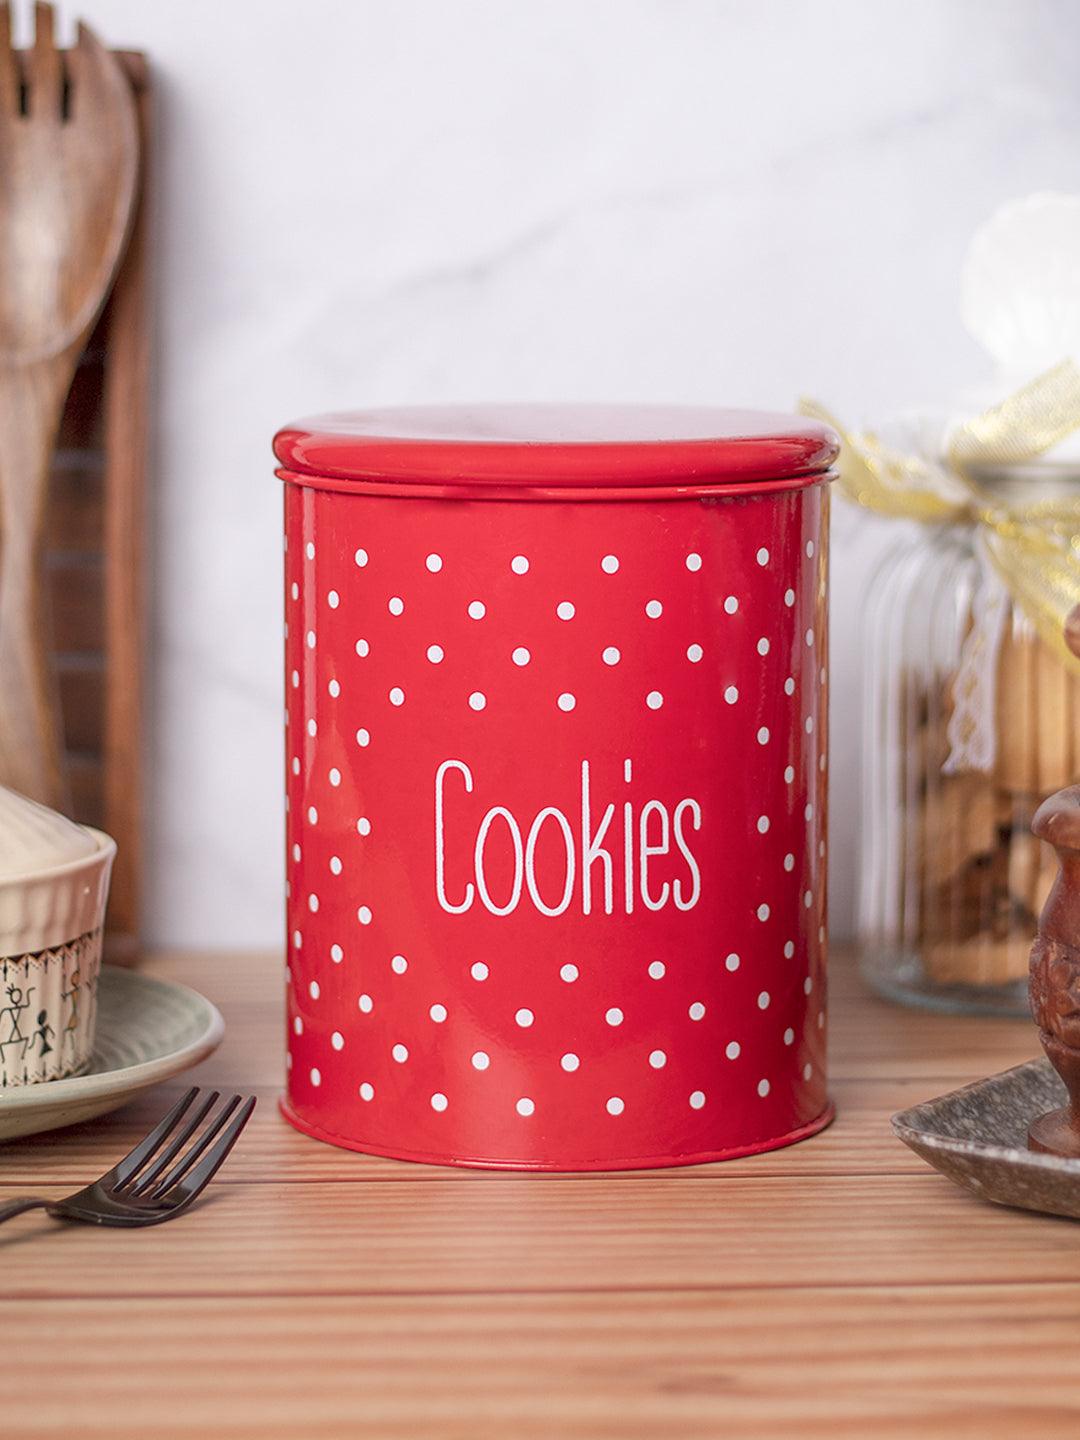 Red Cookies Jar